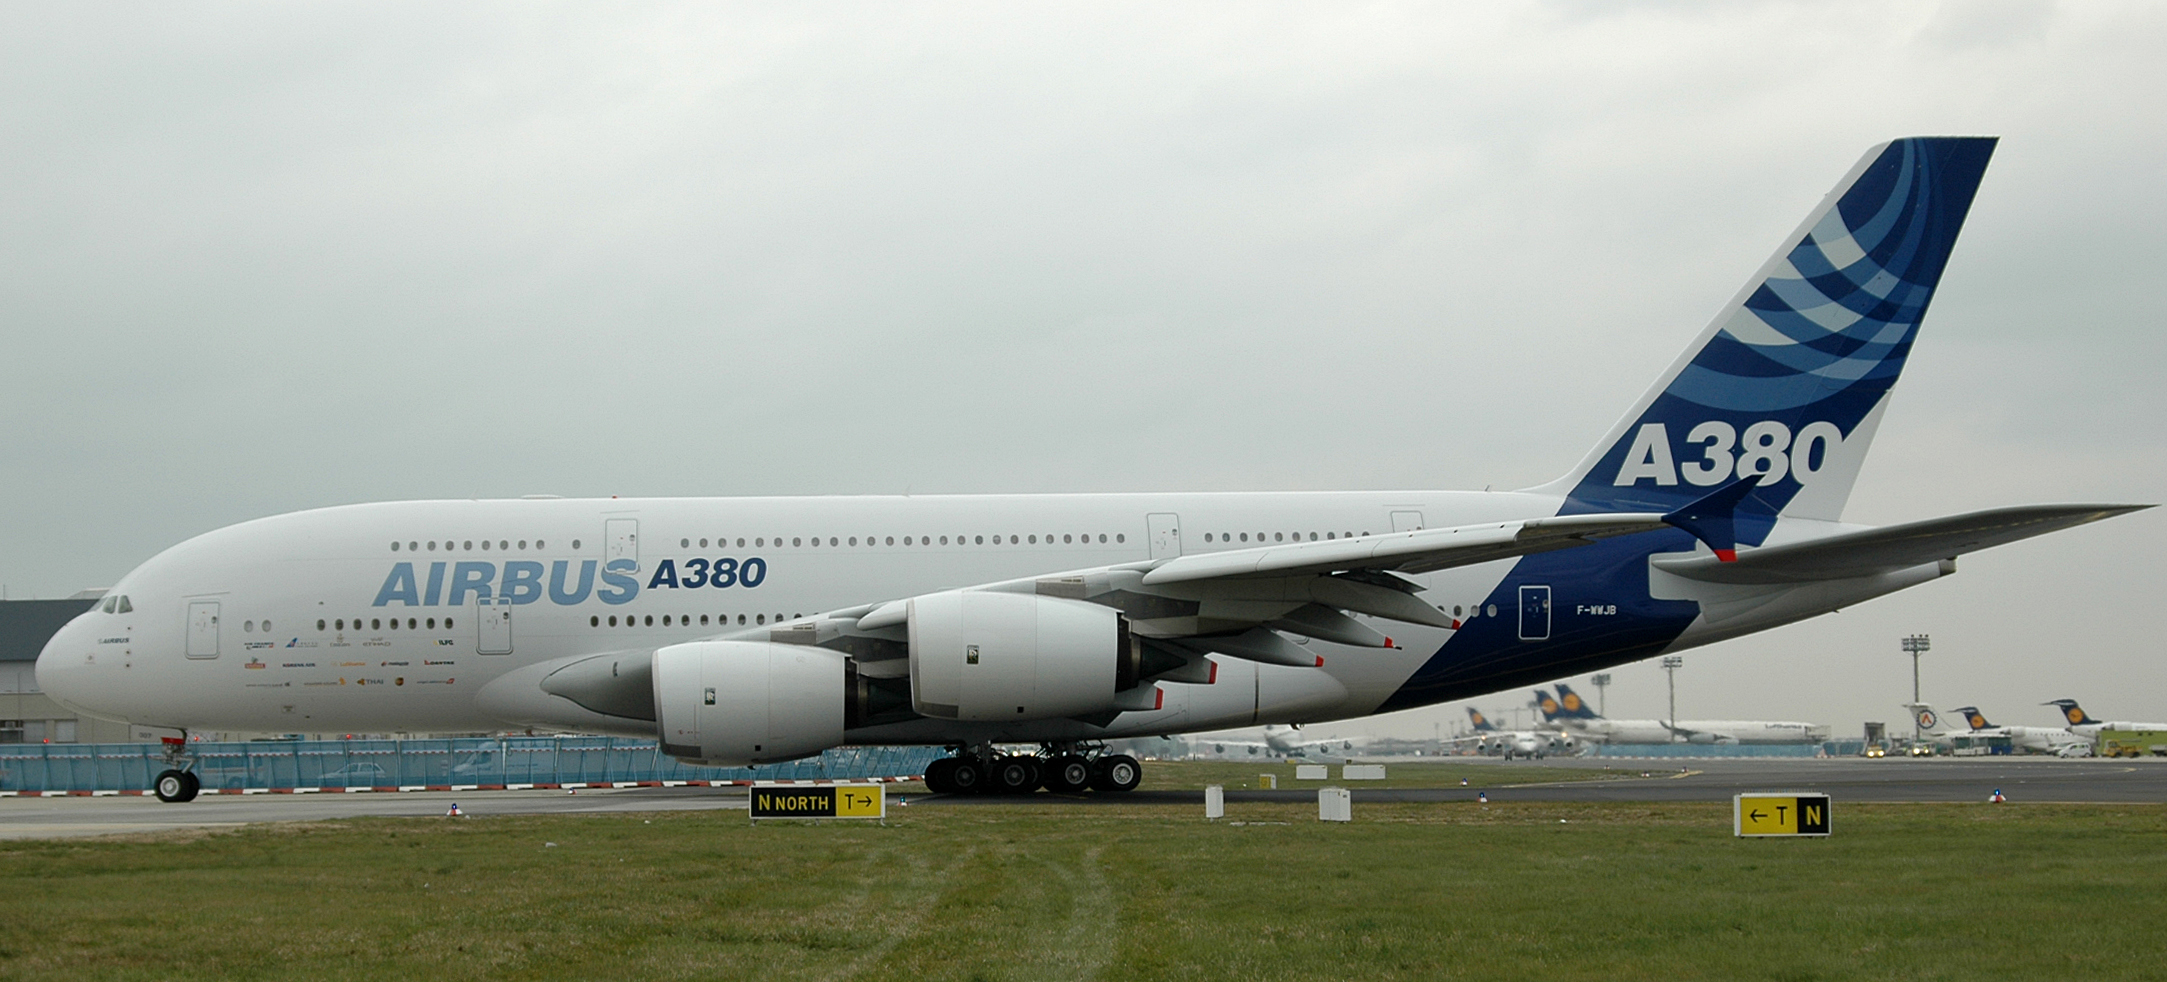 A-380, Airbus, Flughafen Frankfurt, frankfurt airport,F-WWJP, MSN0007, Rollvorgang, apron